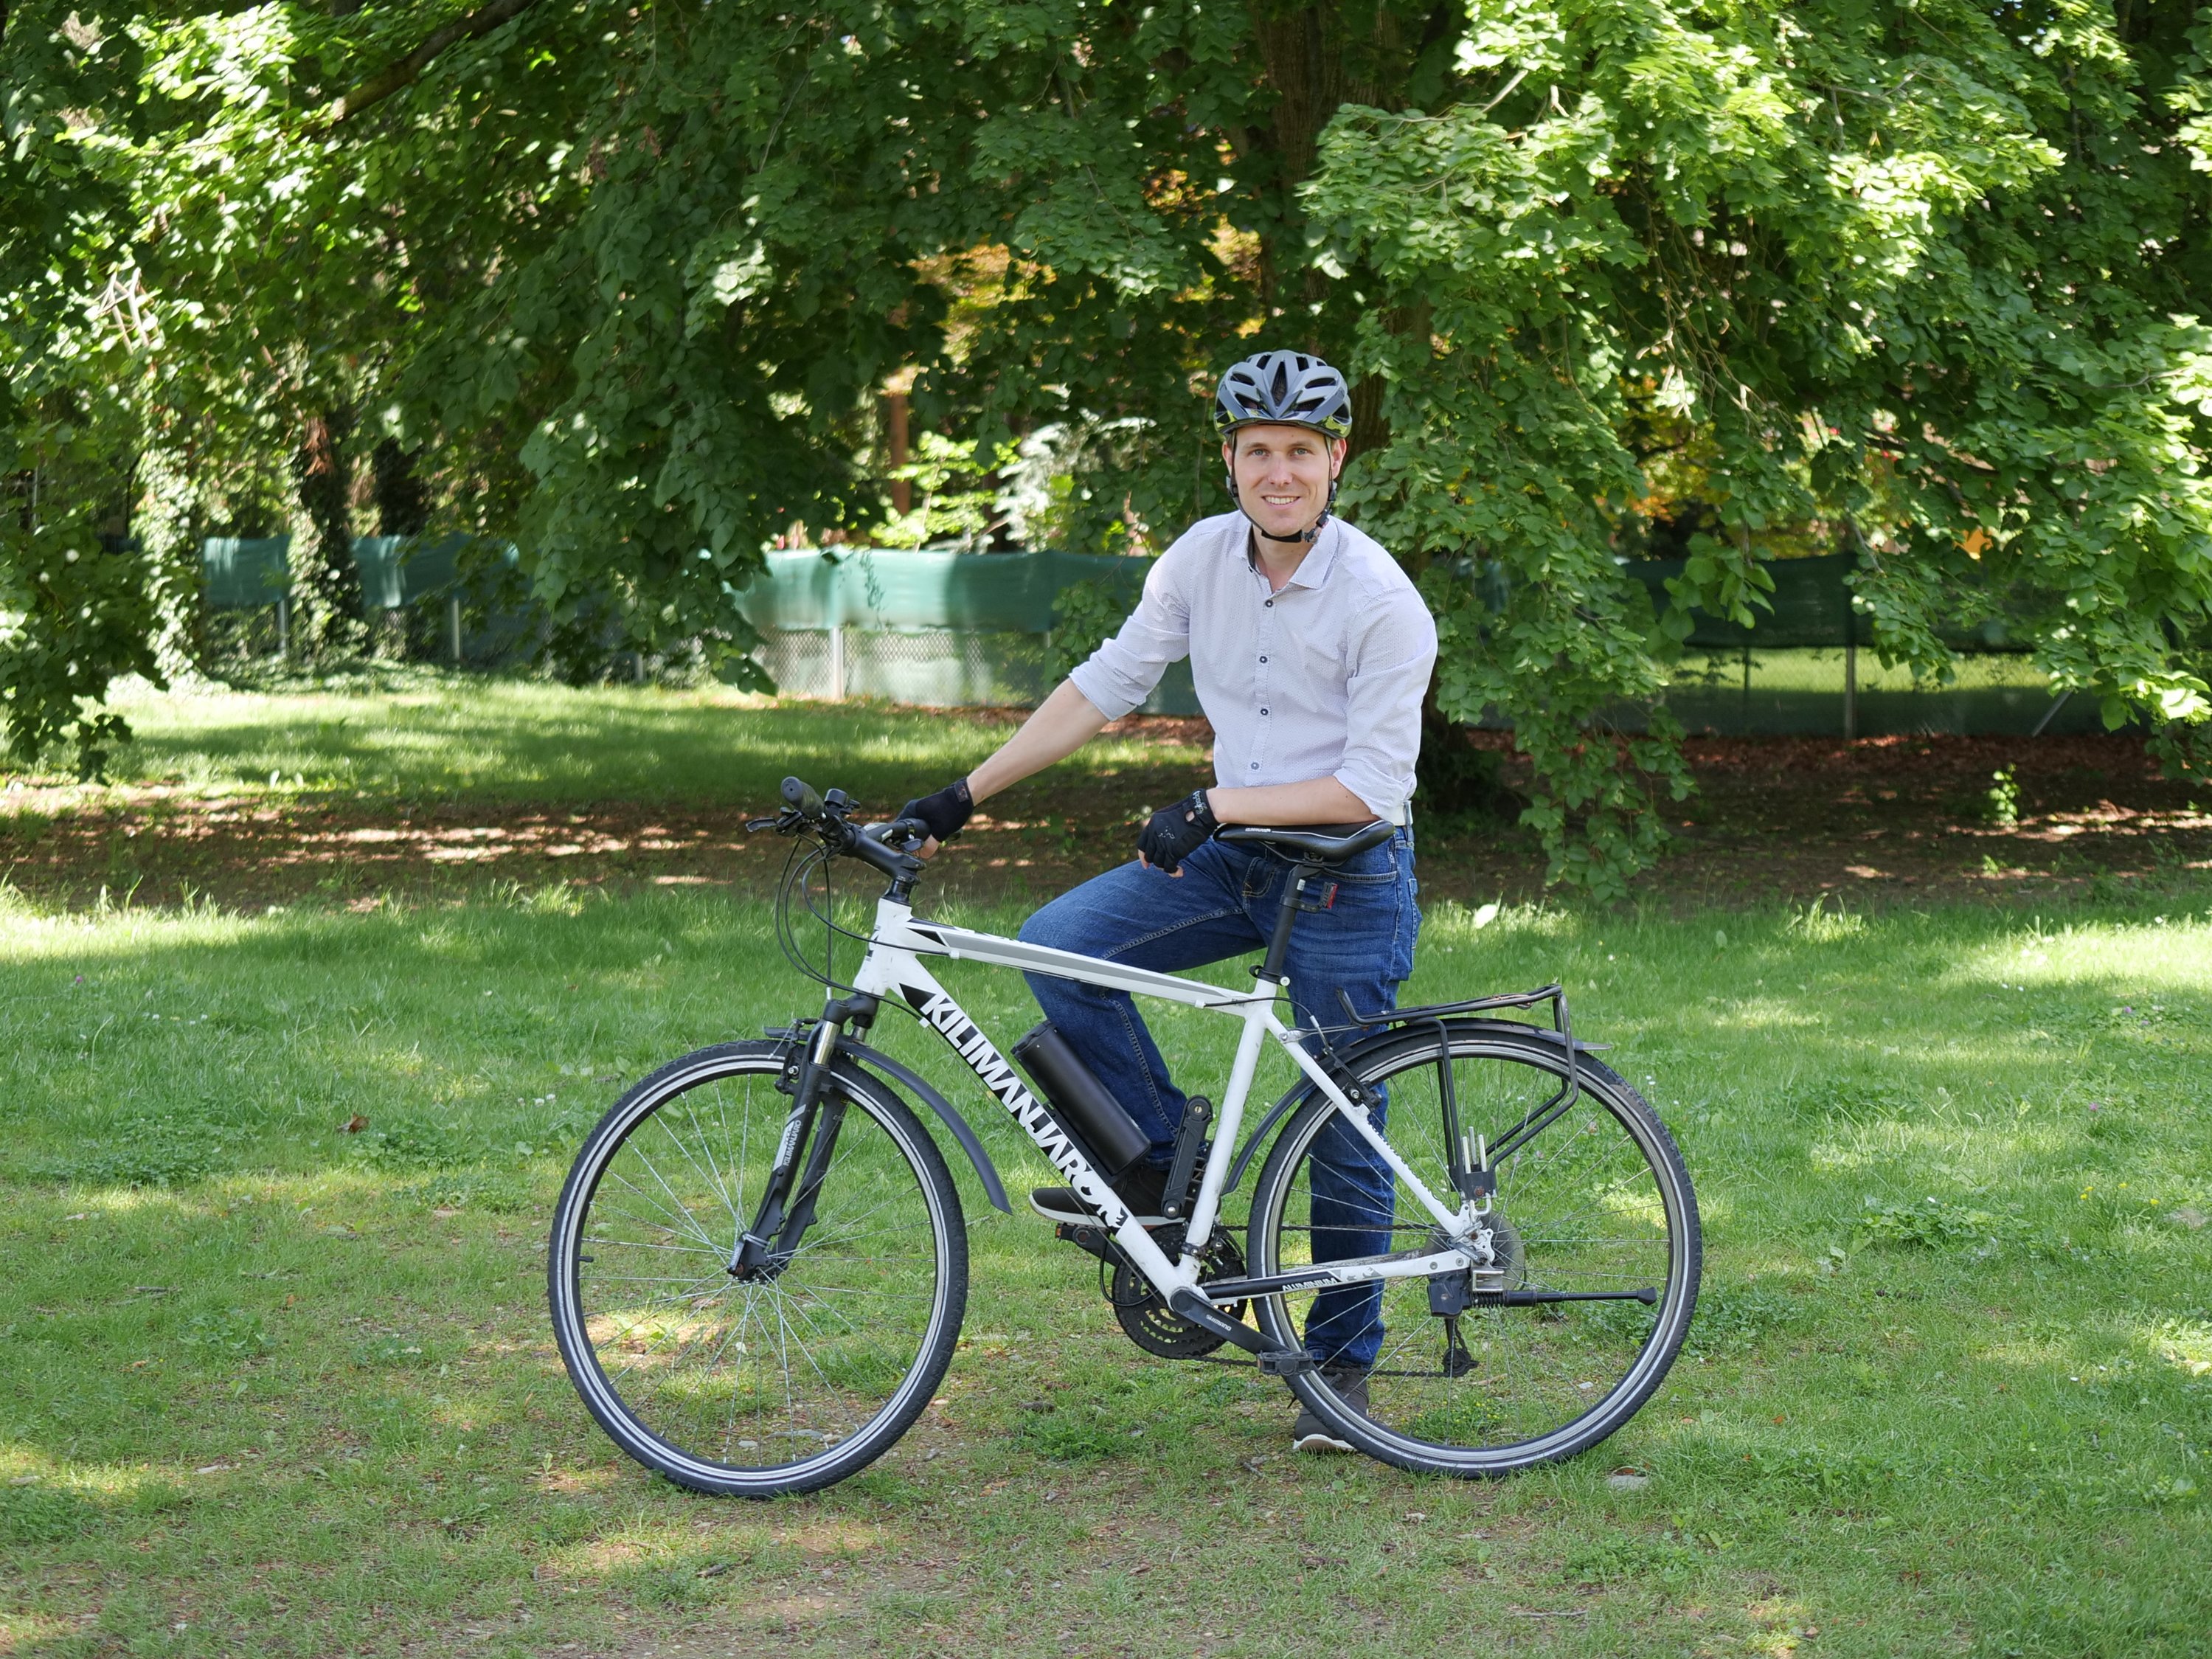 Herbert posing with bike helmet on his bike